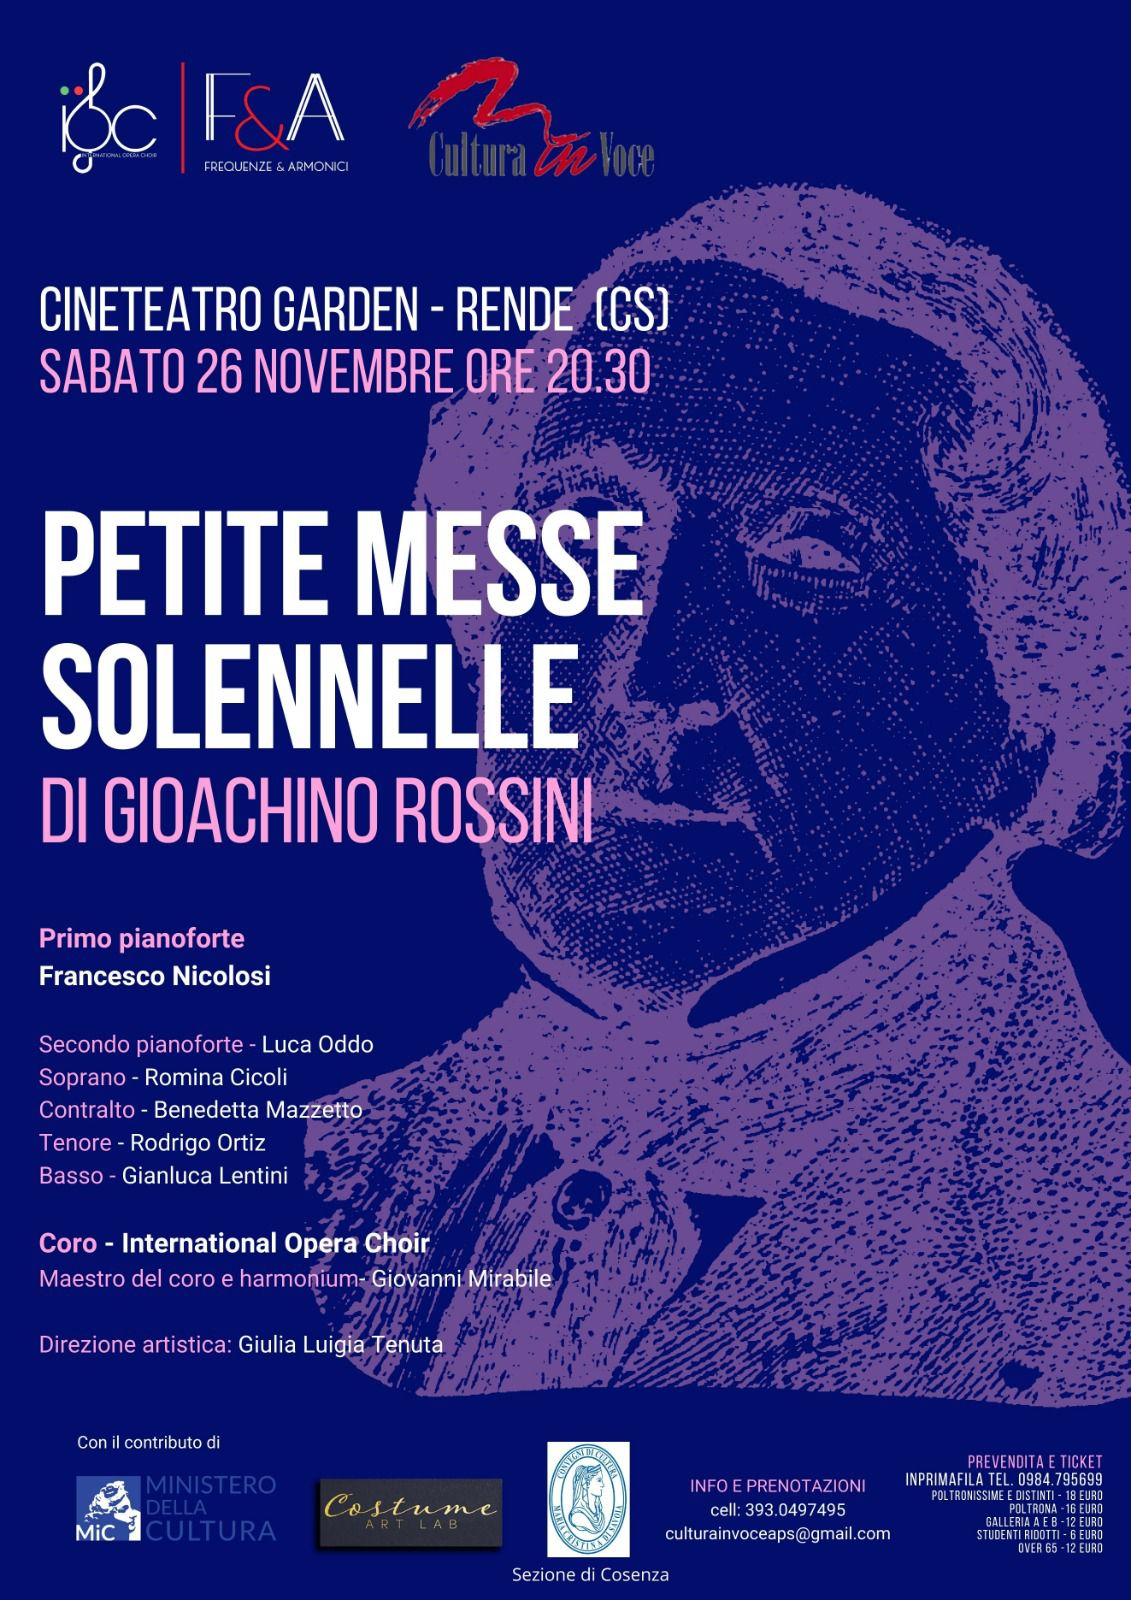 La “Petite messe solennelle” di Gioachino Rossini al Cineteatro Garden di Rende